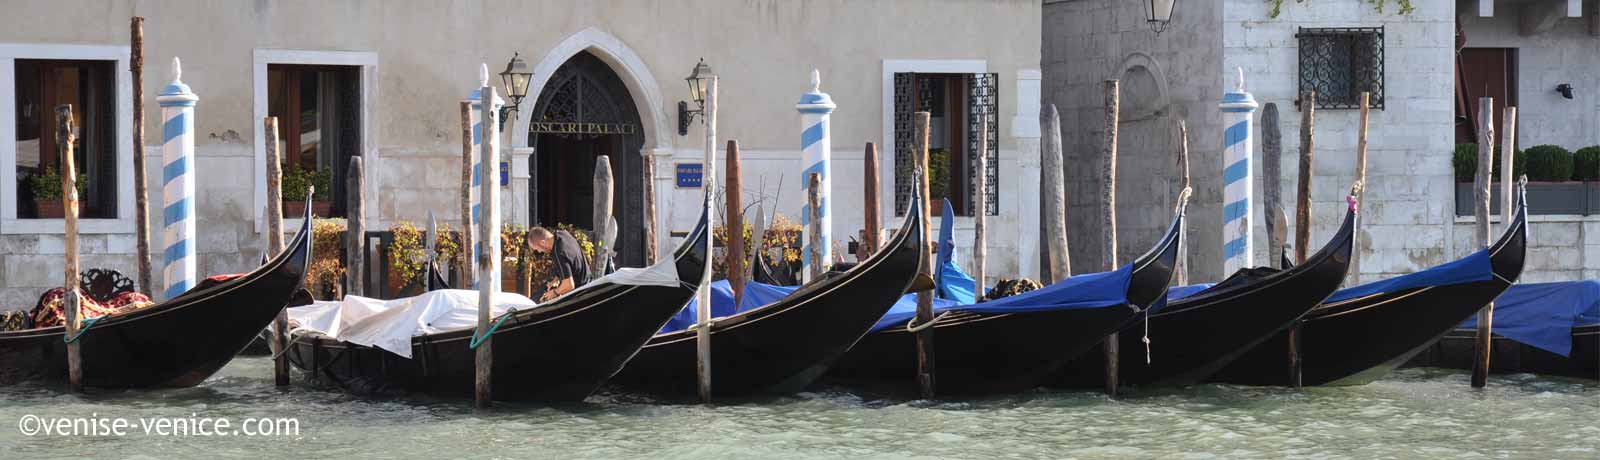 Des gondoles alignées sur le grand canal à Venise